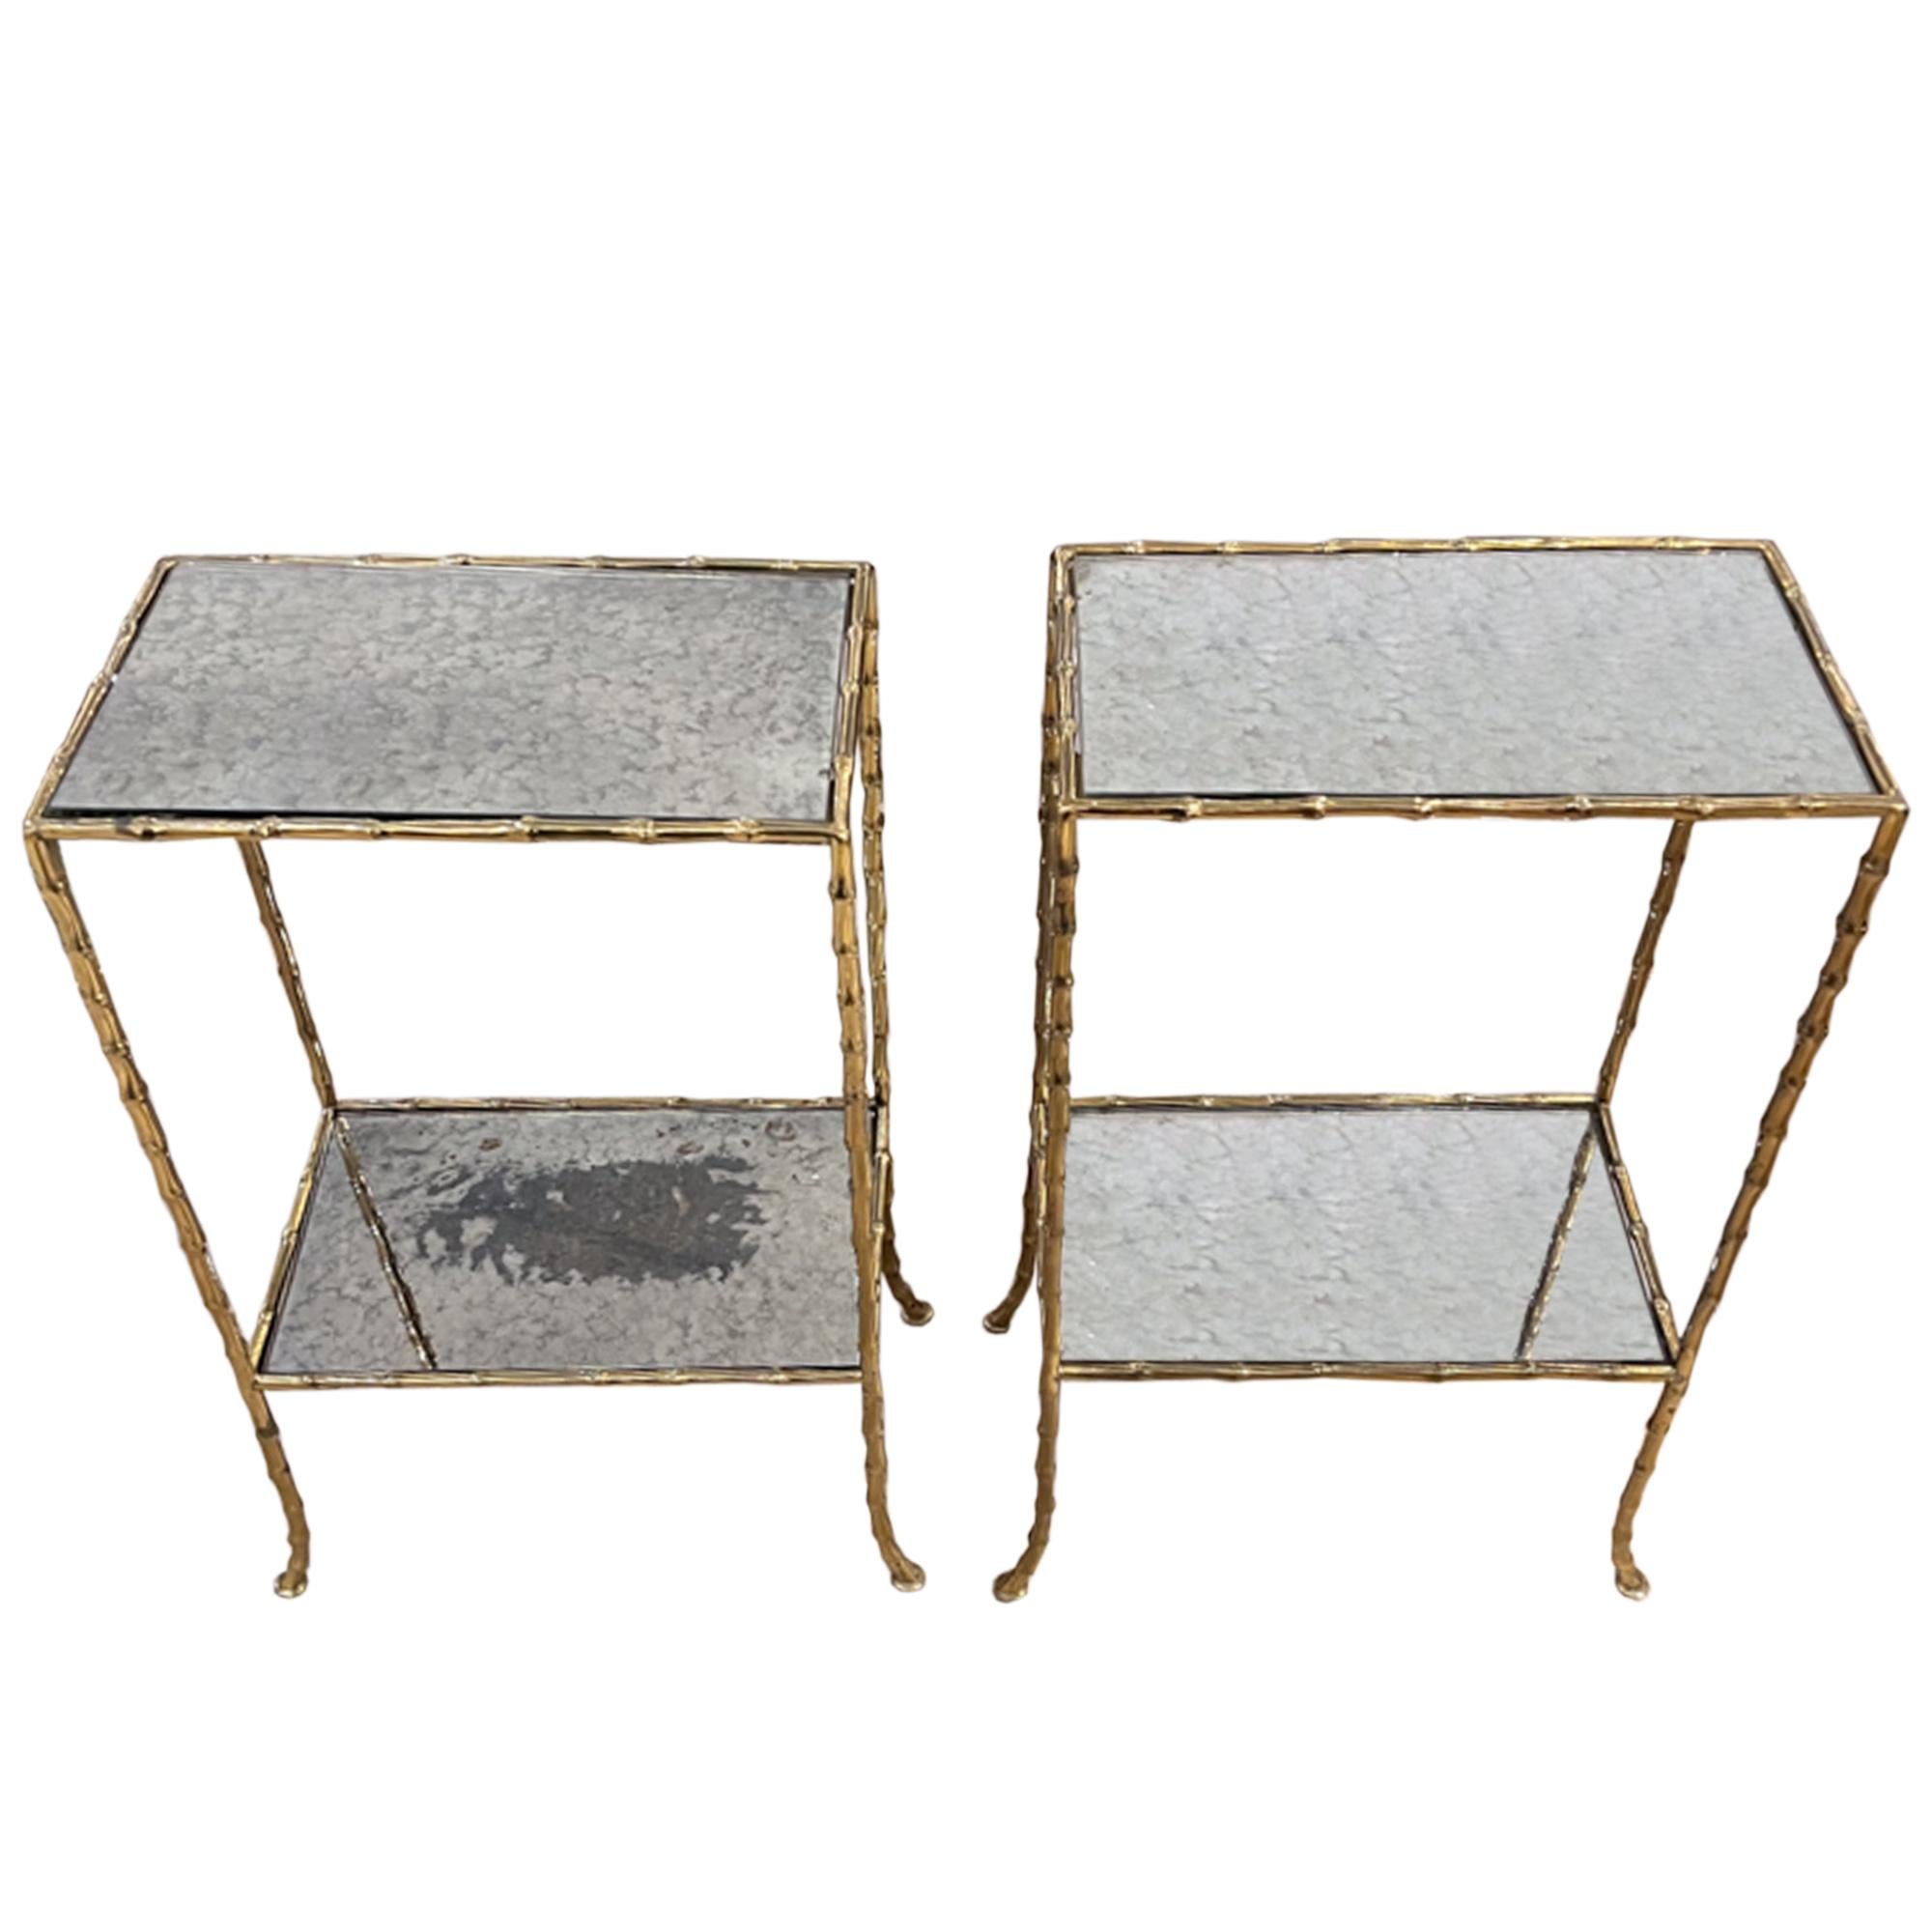 Ein wunderschönes Paar französischer Beistelltische aus den 1960er Jahren aus Messing und Eglomise-Glas.

Ein wirklich elegantes Design mit schön ausgestellten Beinen - zart und doch stabil!

Diese Tische sind ideal für kleinere Empfangsräume,